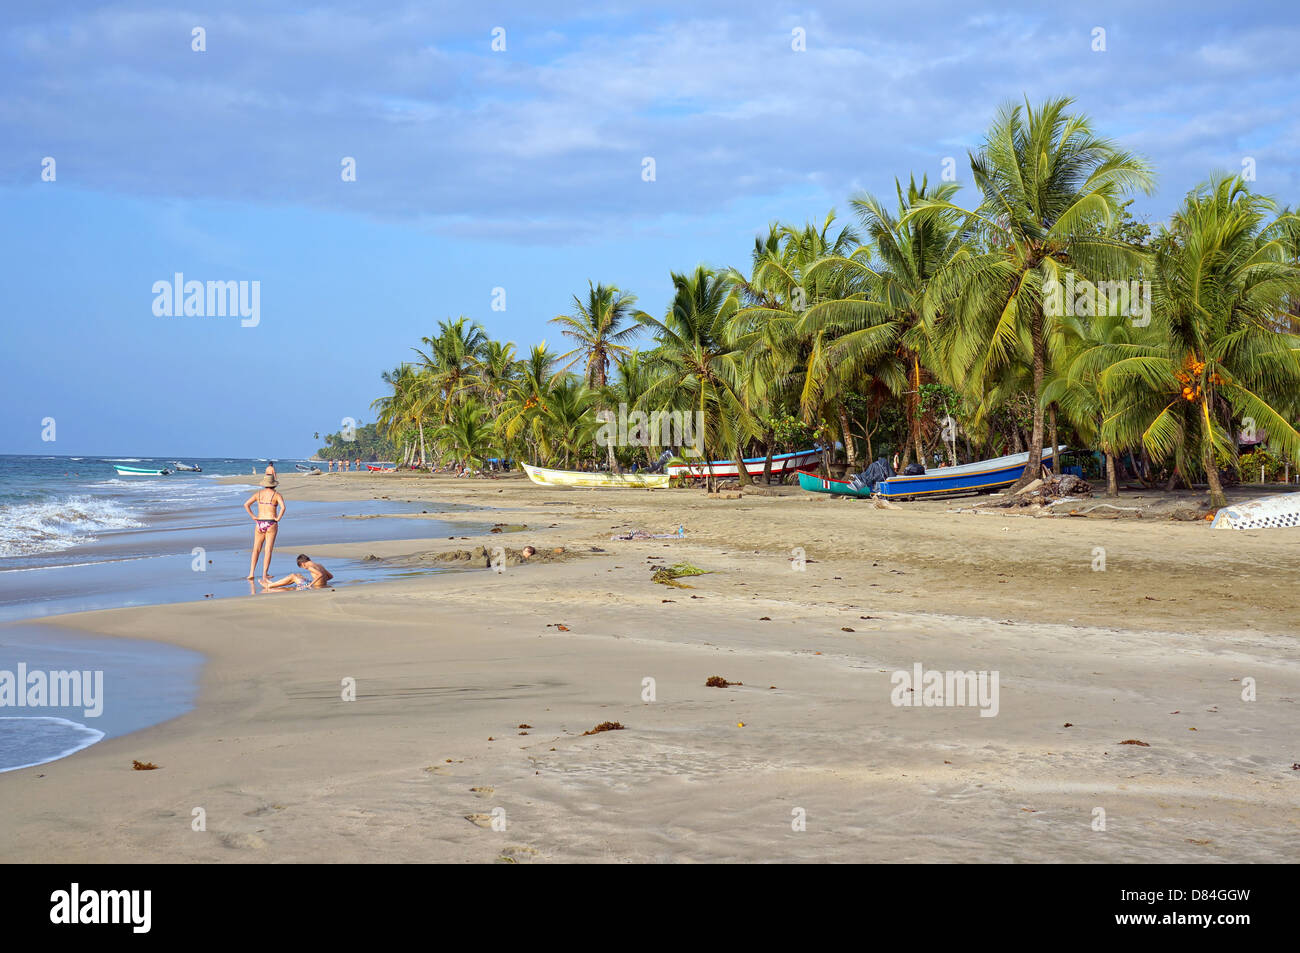 Playa Tropical con botes de pesca bajo los cocoteros, el Caribe, Manzanillo, Costa Rica Foto de stock